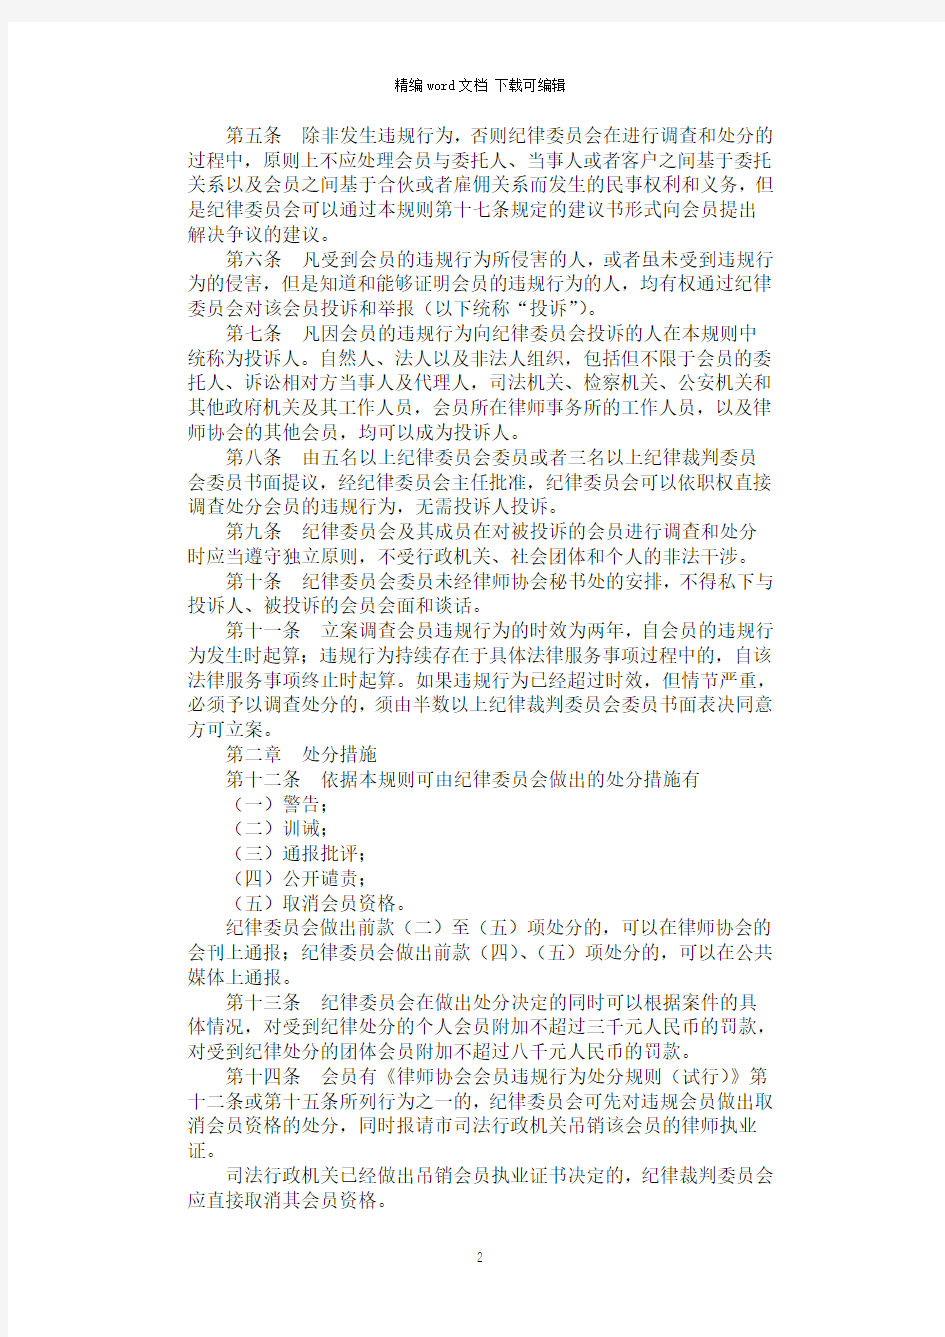 2021年北京市律师协会会员纪律处分规则